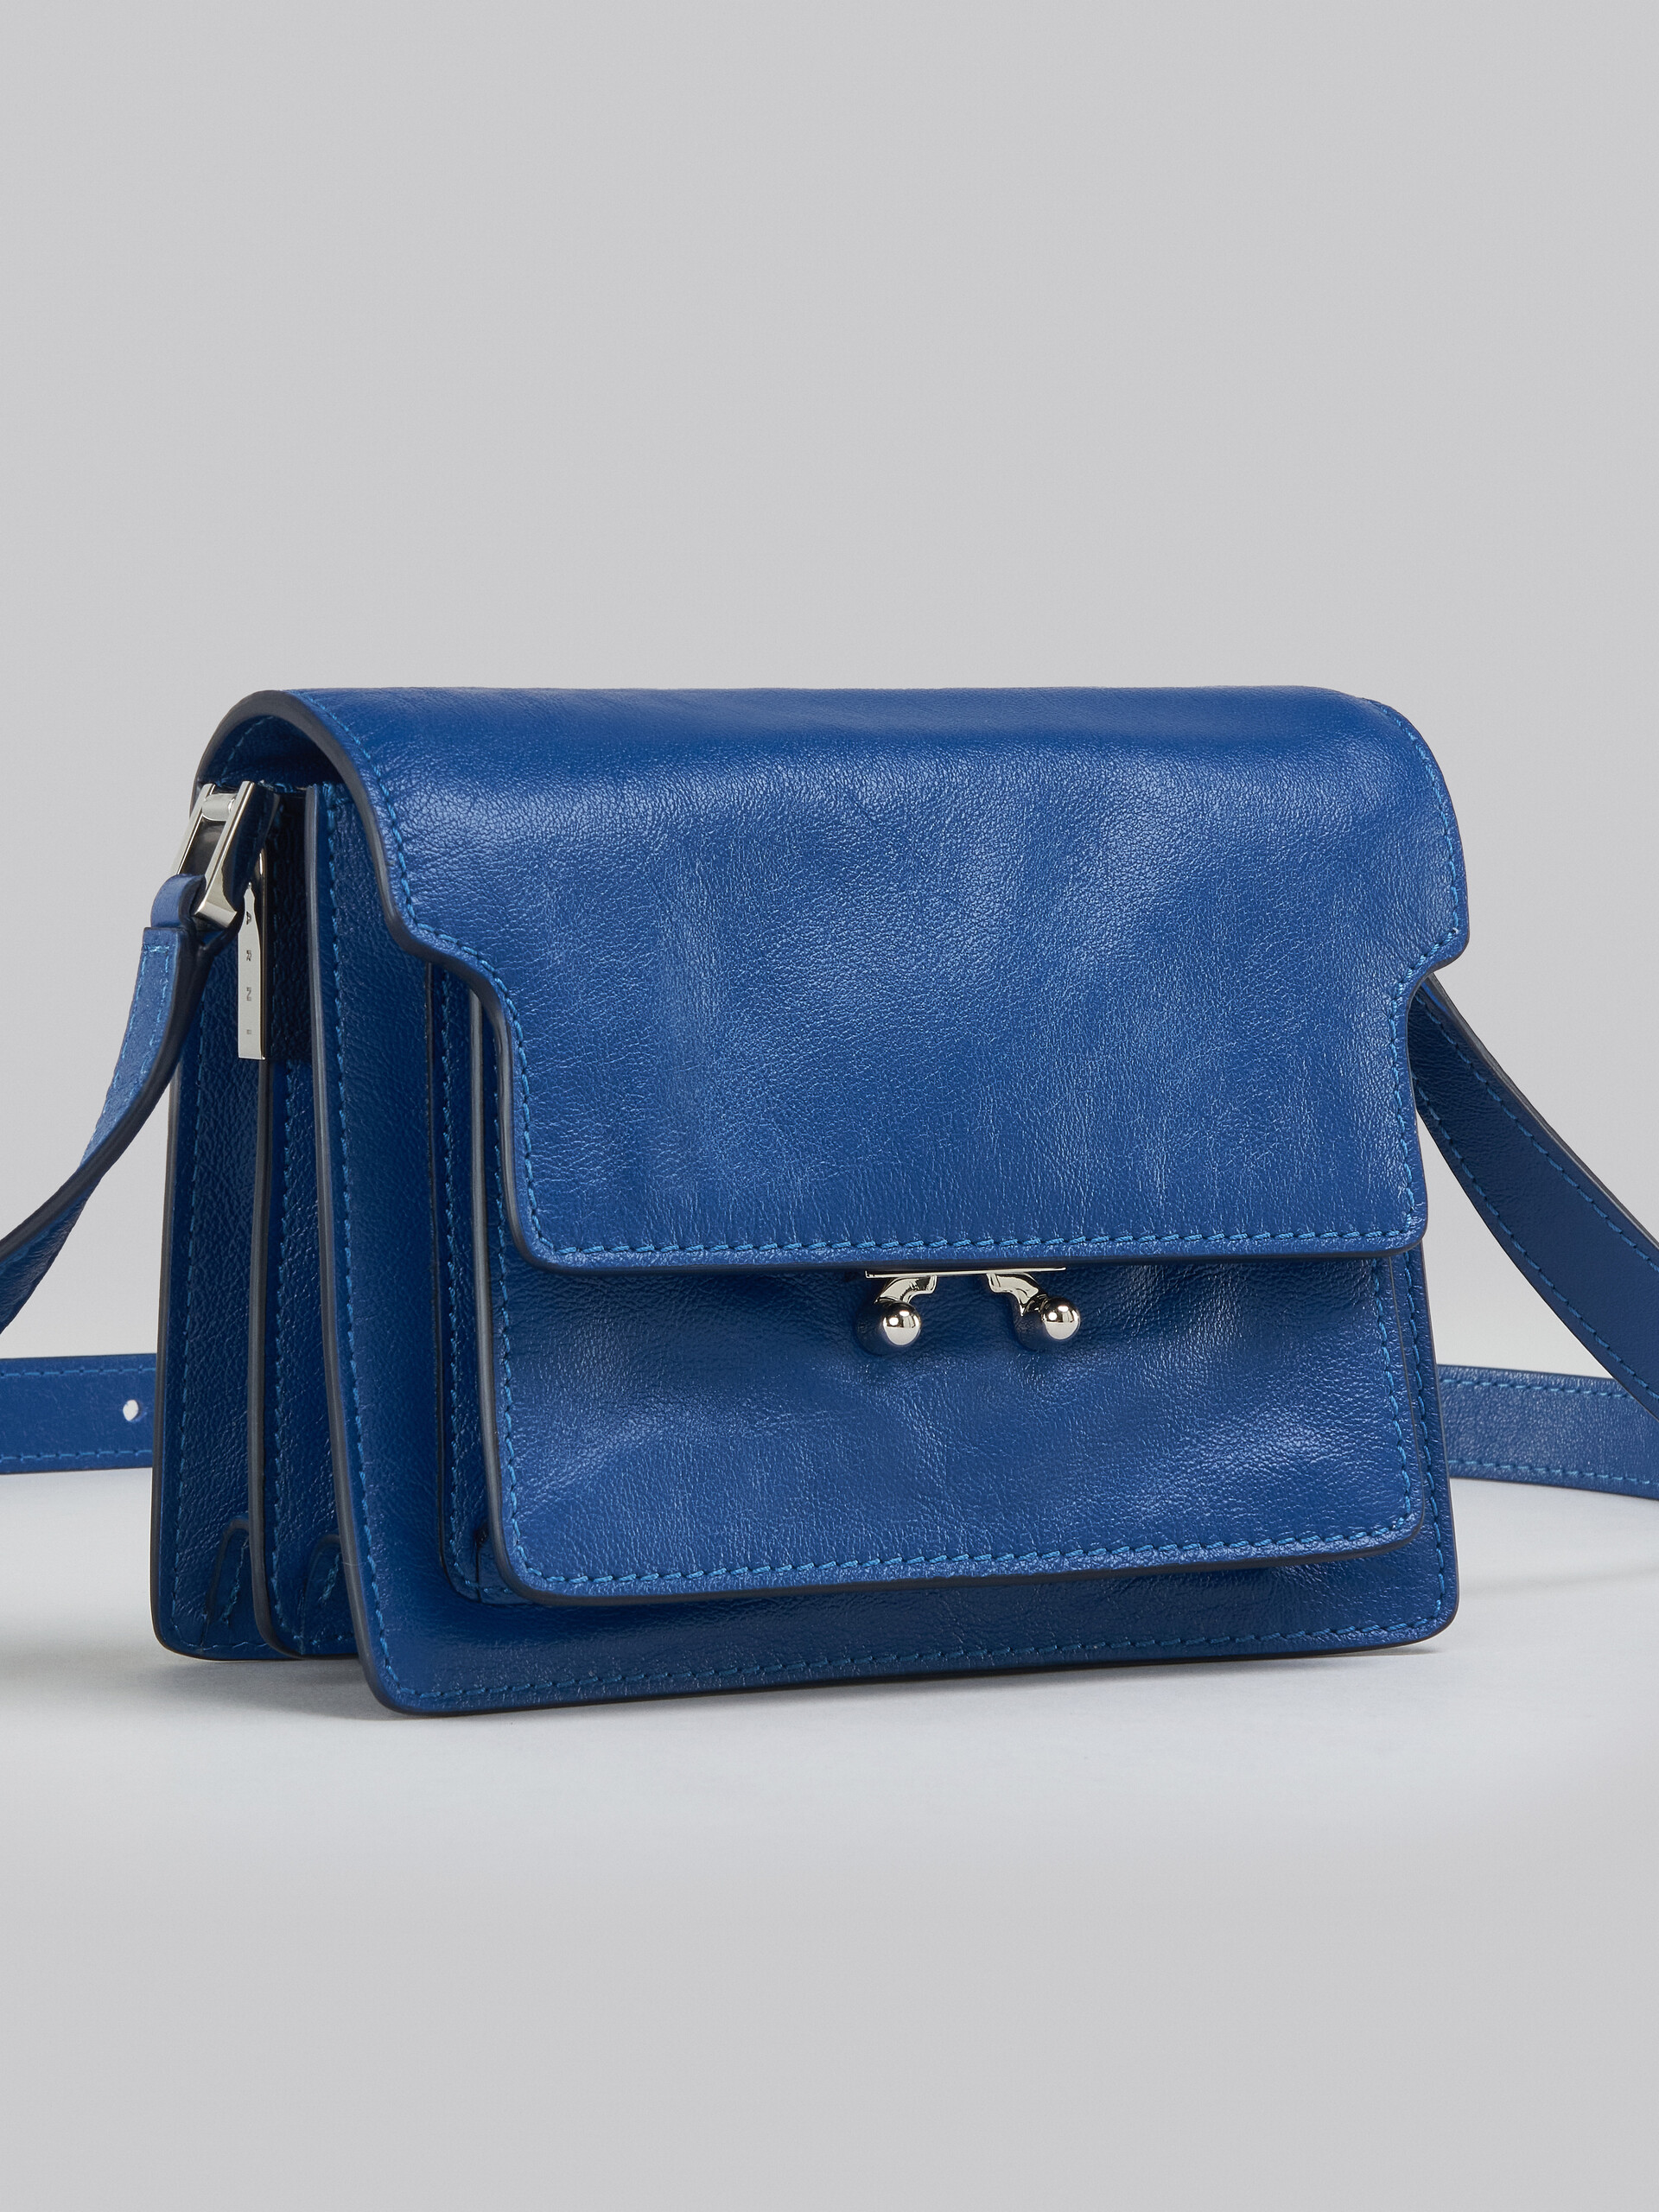 Trunk Soft Mini Bag in blue leather - Shoulder Bag - Image 5